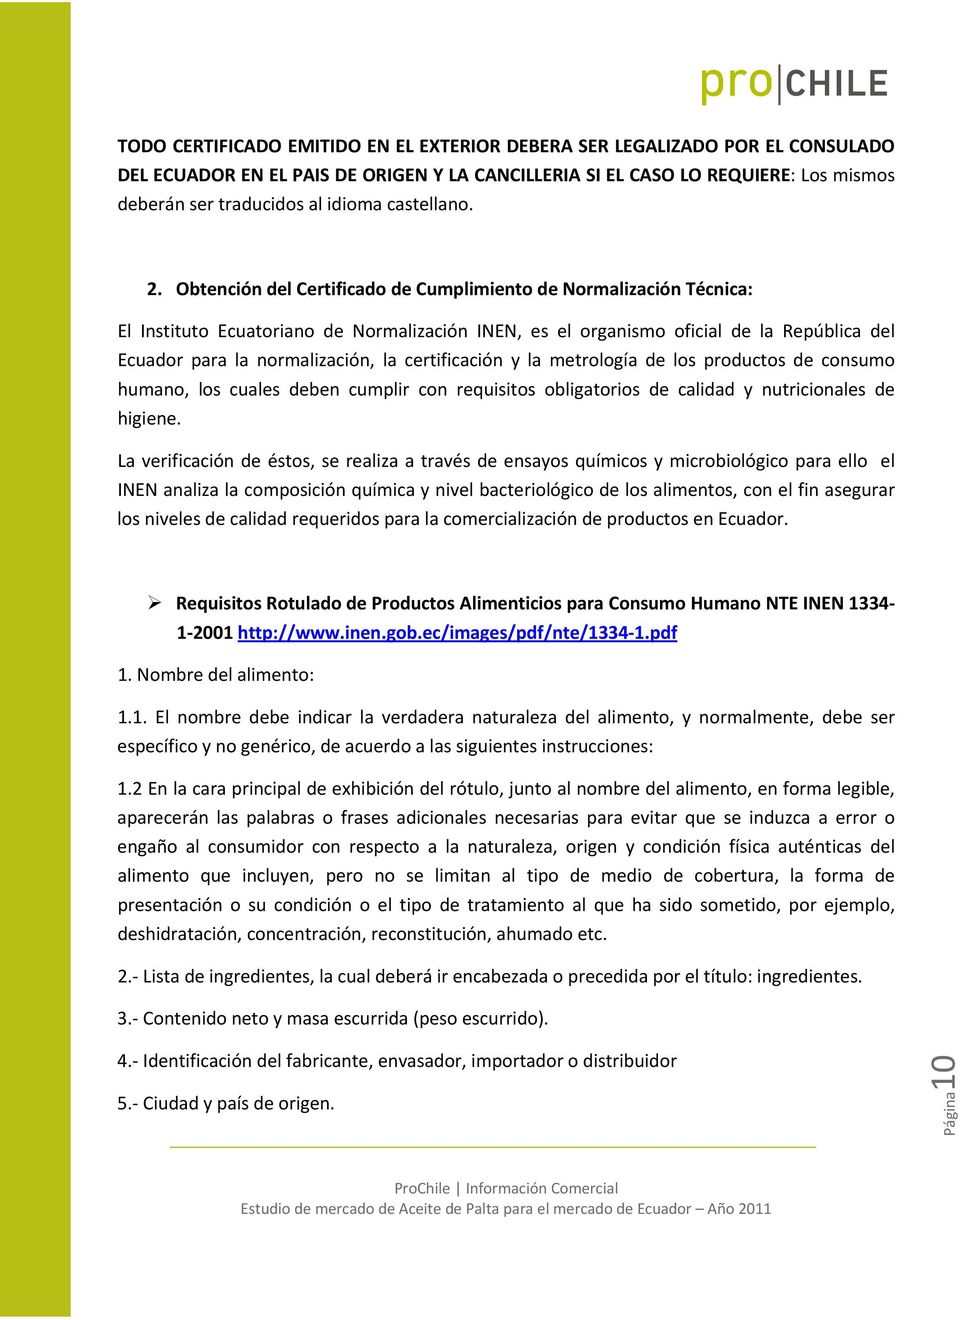 Obtención del Certificado de Cumplimiento de Normalización Técnica: El Instituto Ecuatoriano de Normalización INEN, es el organismo oficial de la República del Ecuador para la normalización, la